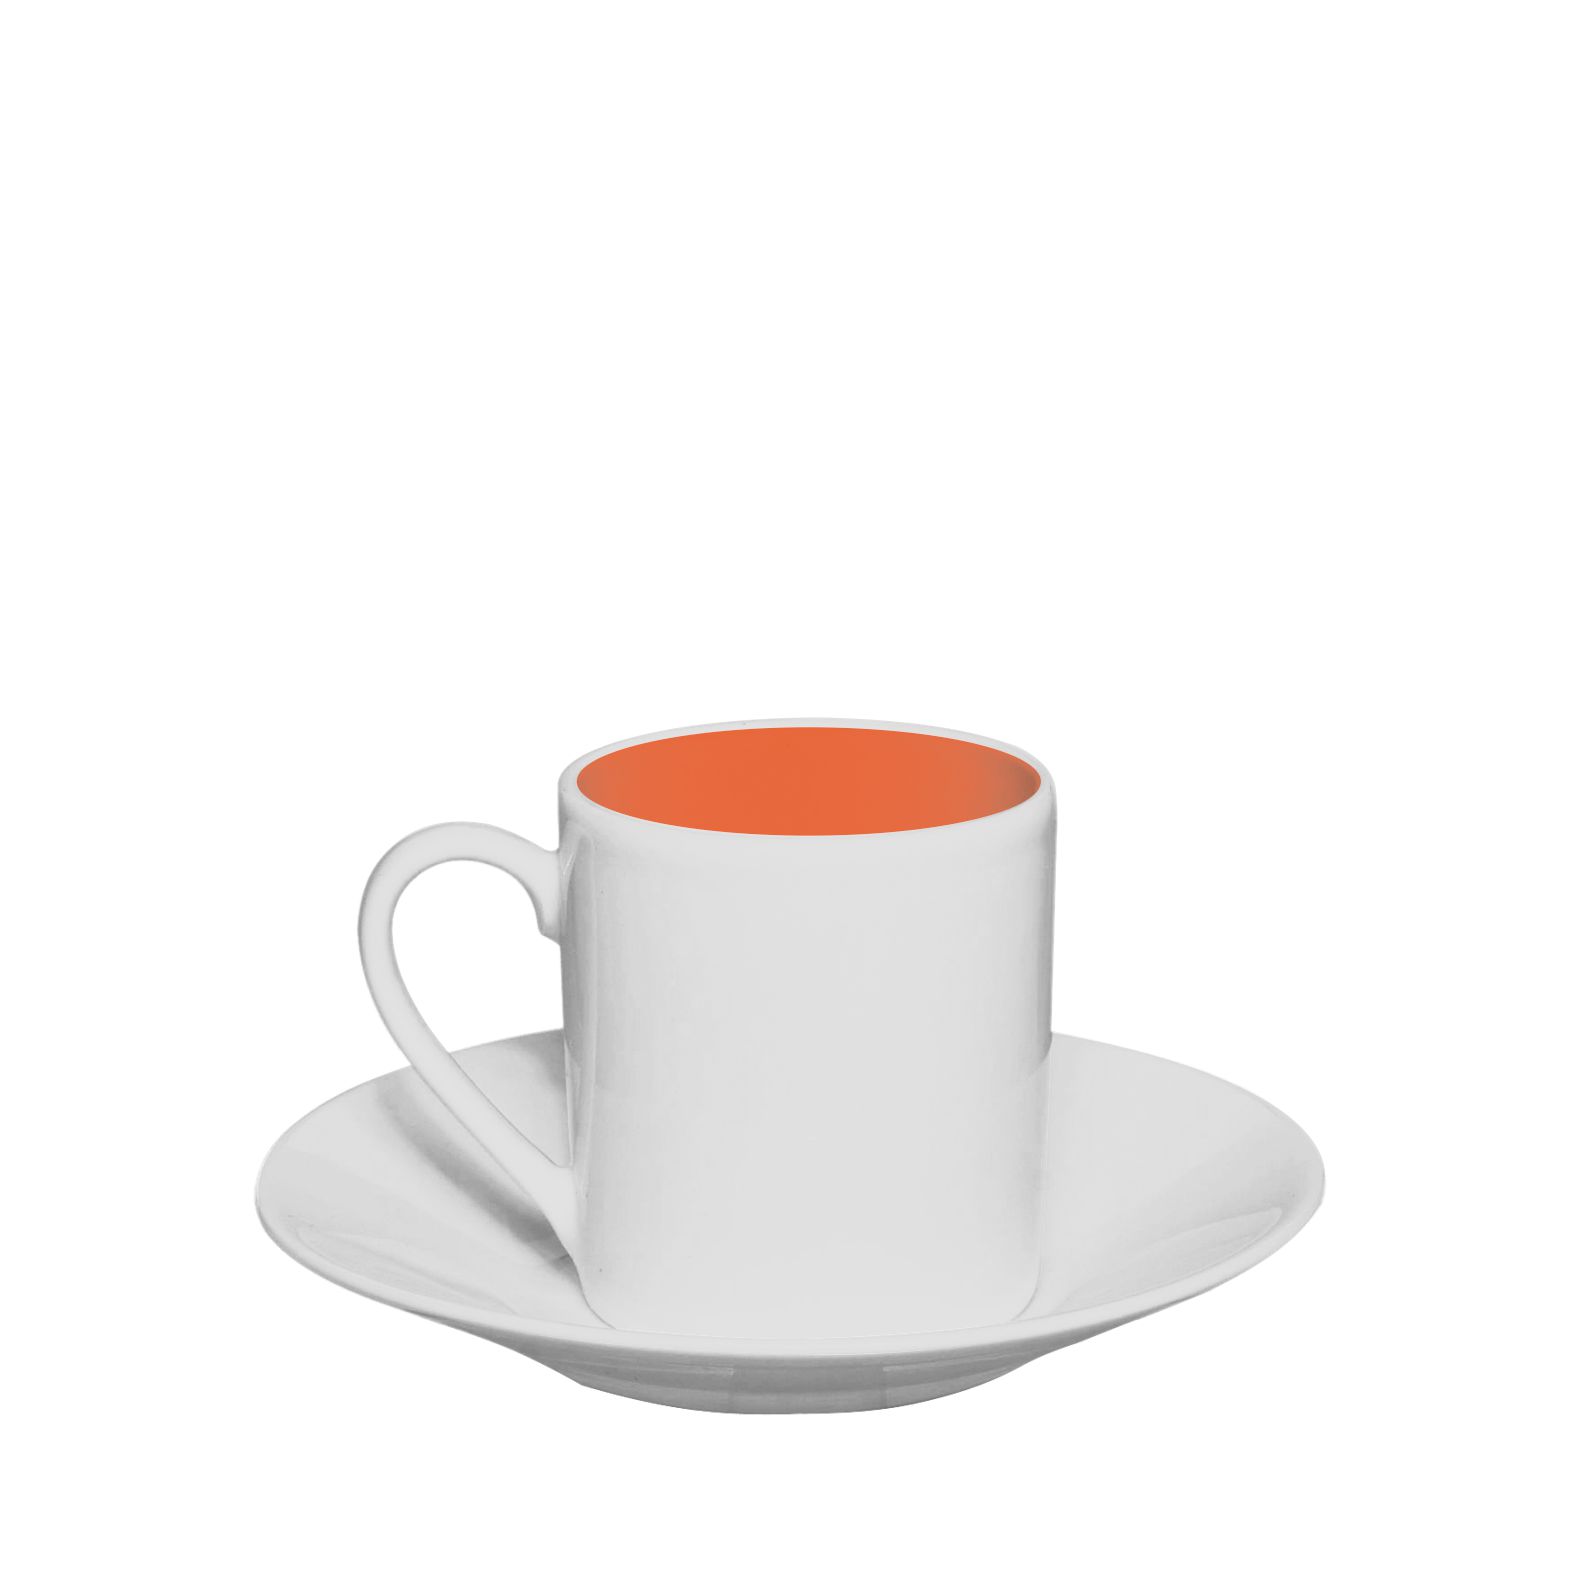 /sites/default/files/2020-03/Fili%C5%BCanka_classic_espresso_white-orange.jpg